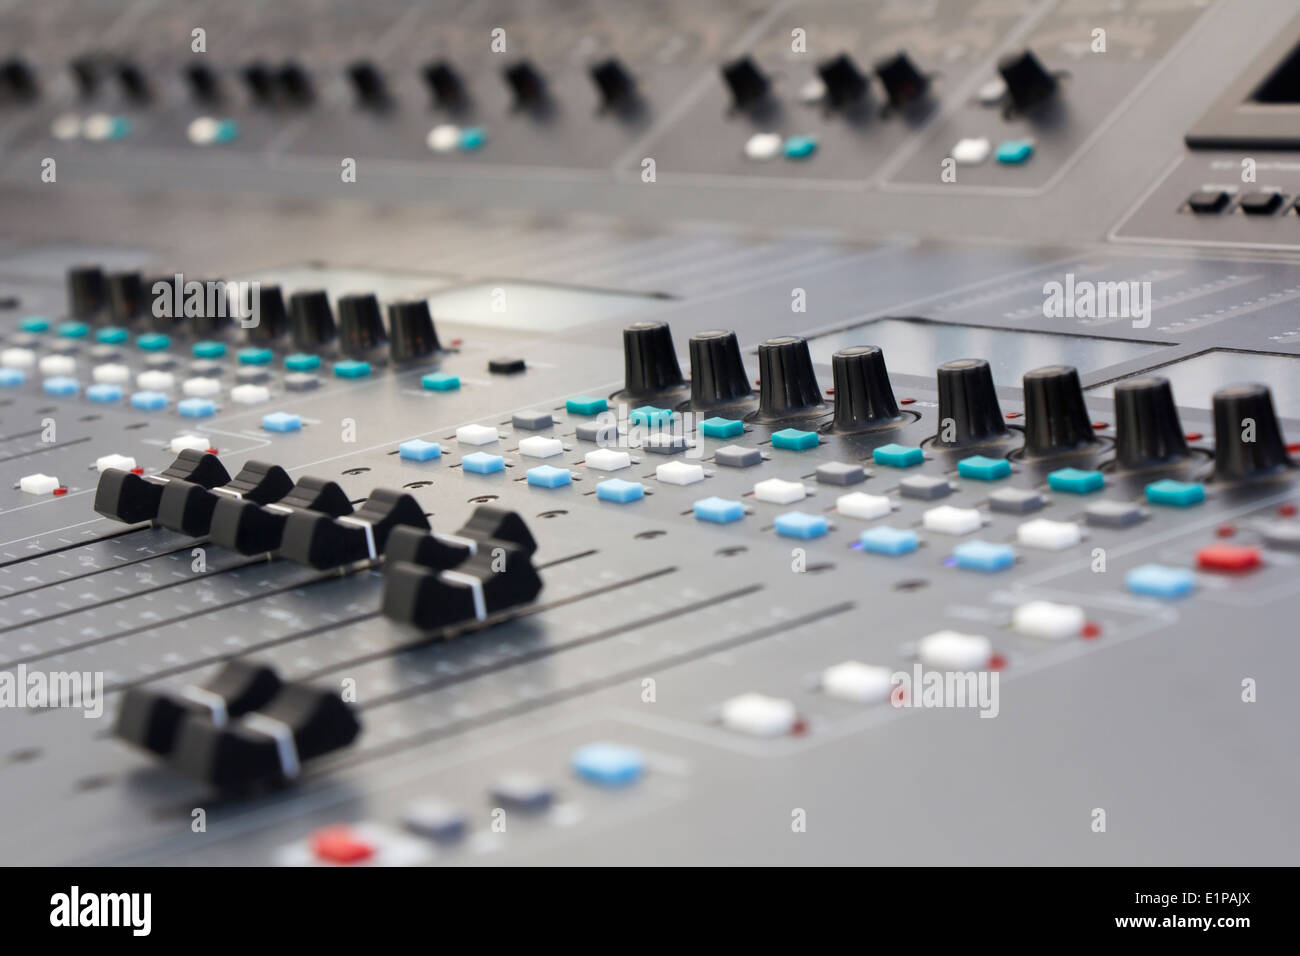 Grande table de mixage musique matériel pour le contrôle de son équipement pour les boutons de commande de mixage sonore Banque D'Images